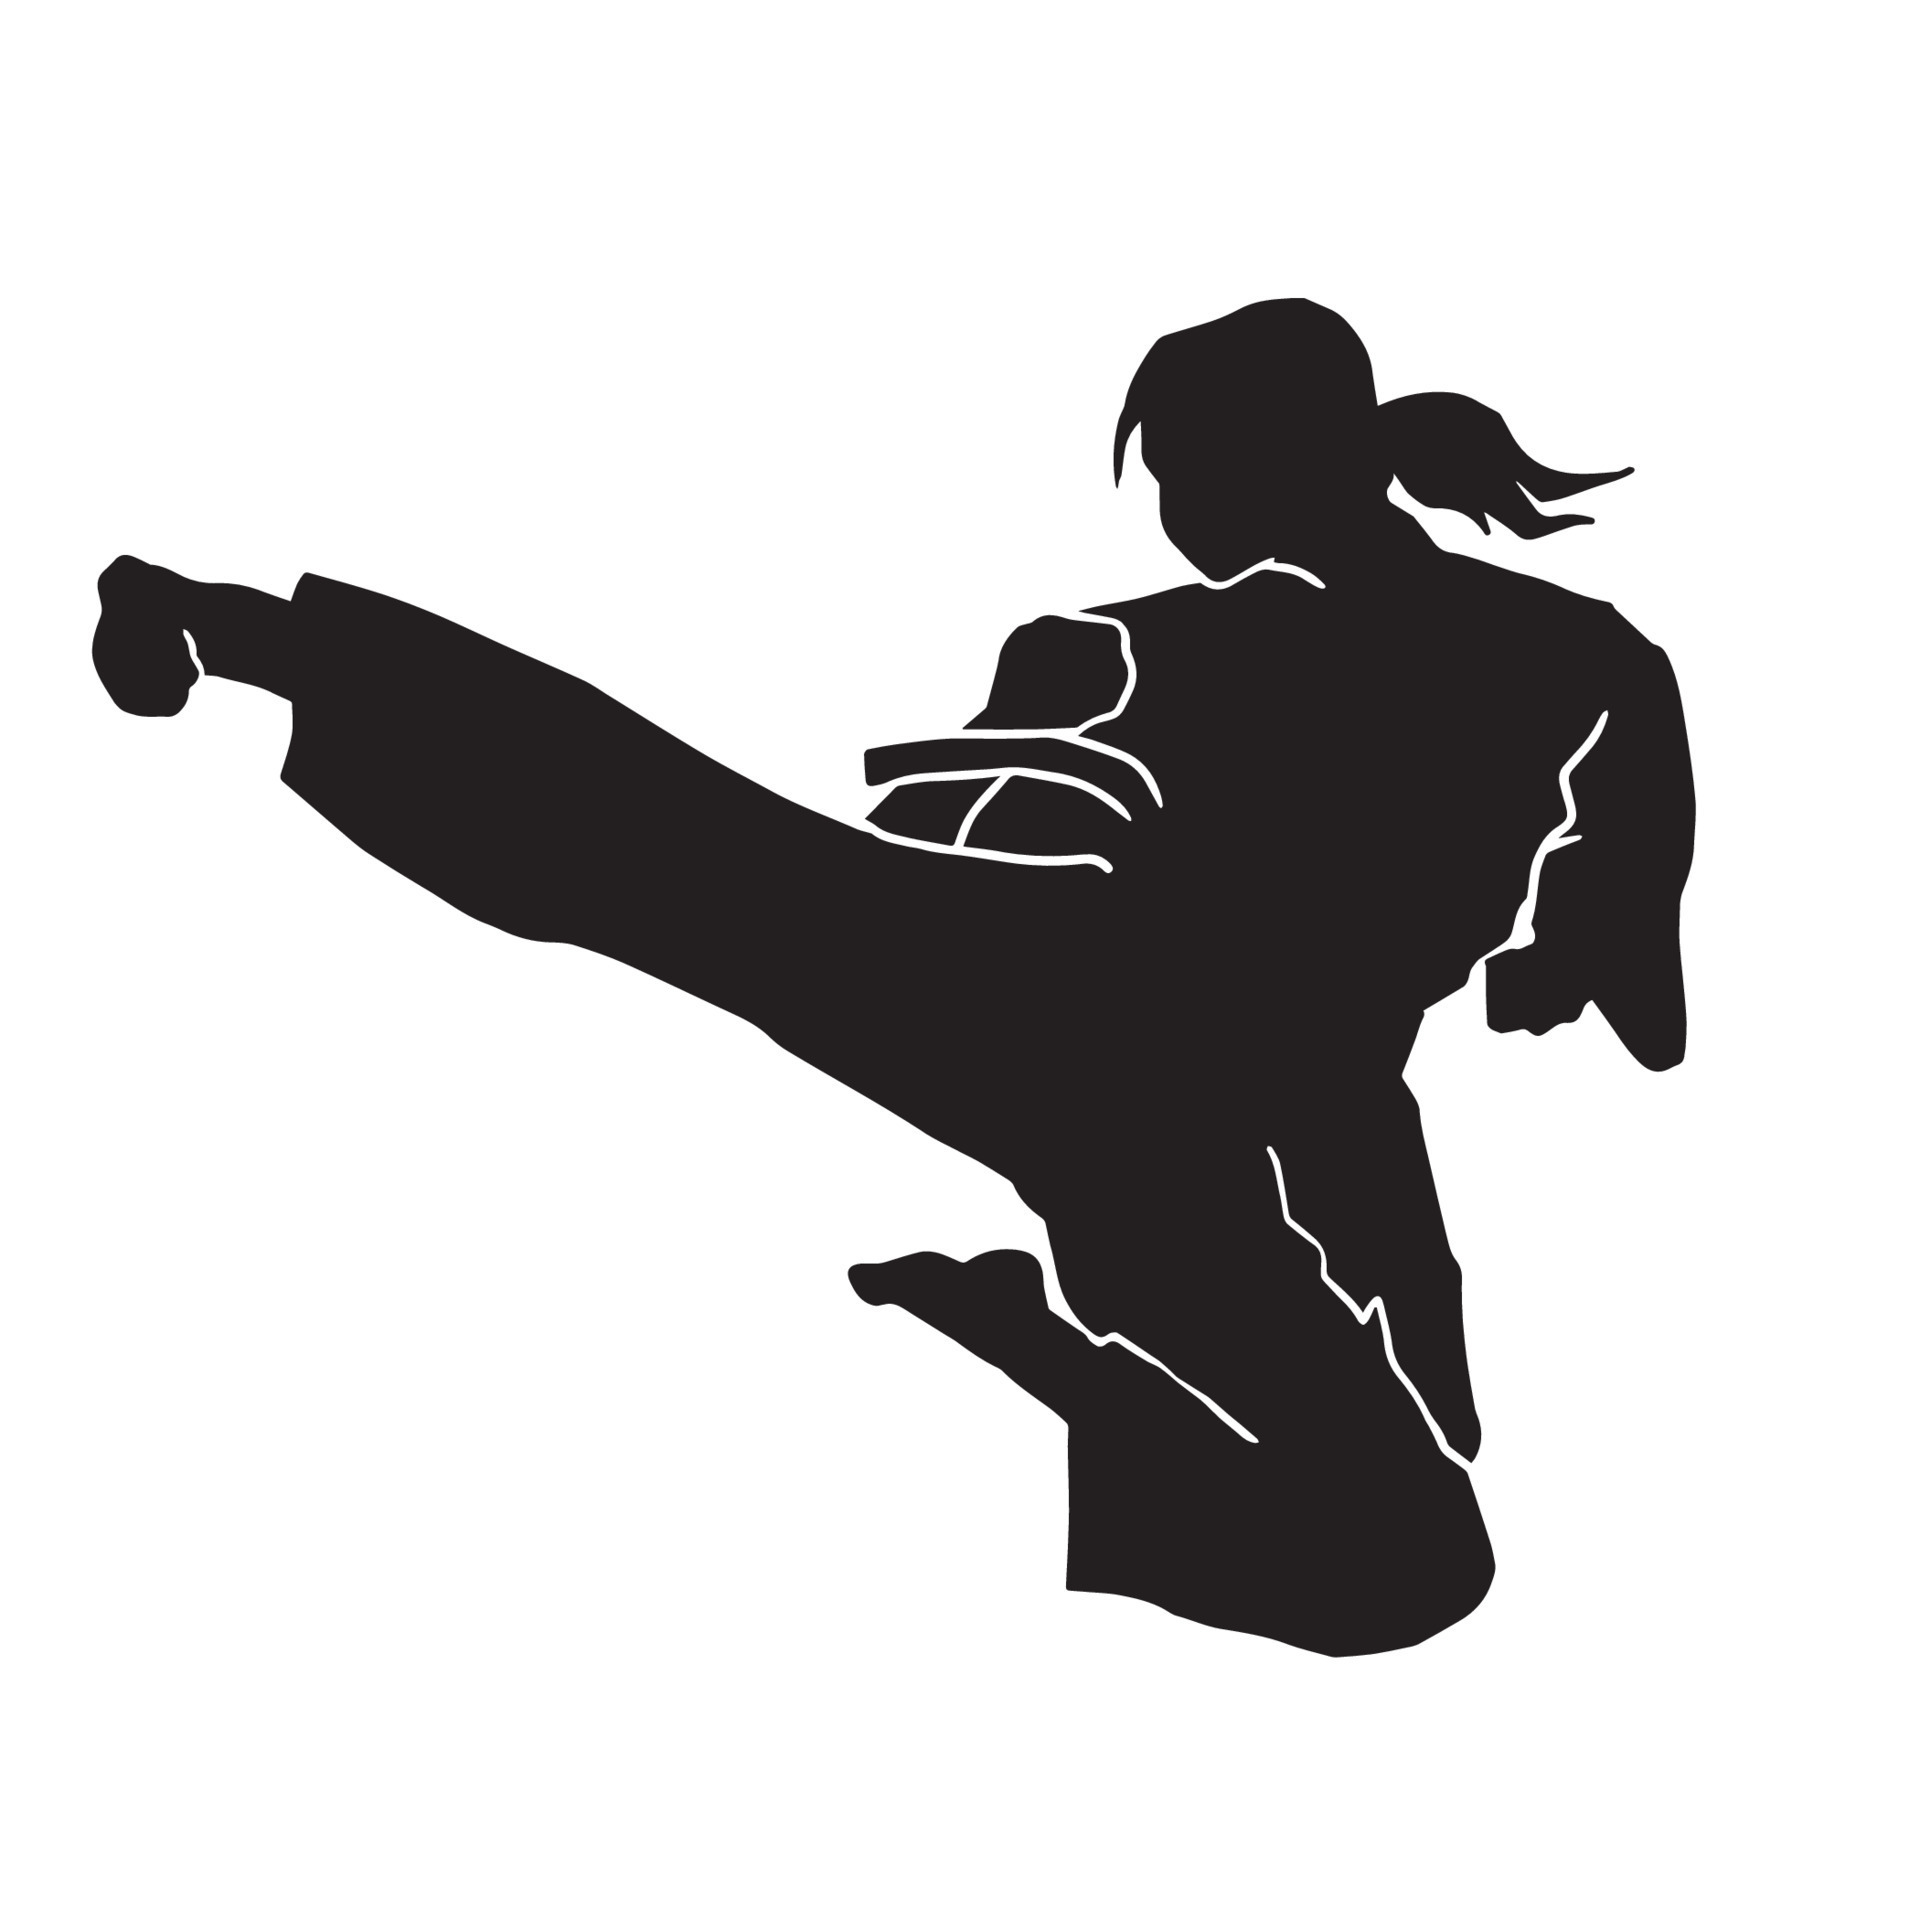 Người vận động viên Karate được phác thảo như một bóng đen trên nền cảnh tuyệt đẹp. Cảm nhận sức mạnh và tinh thần không ngừng cùng hình ảnh đầy ấn tượng này.